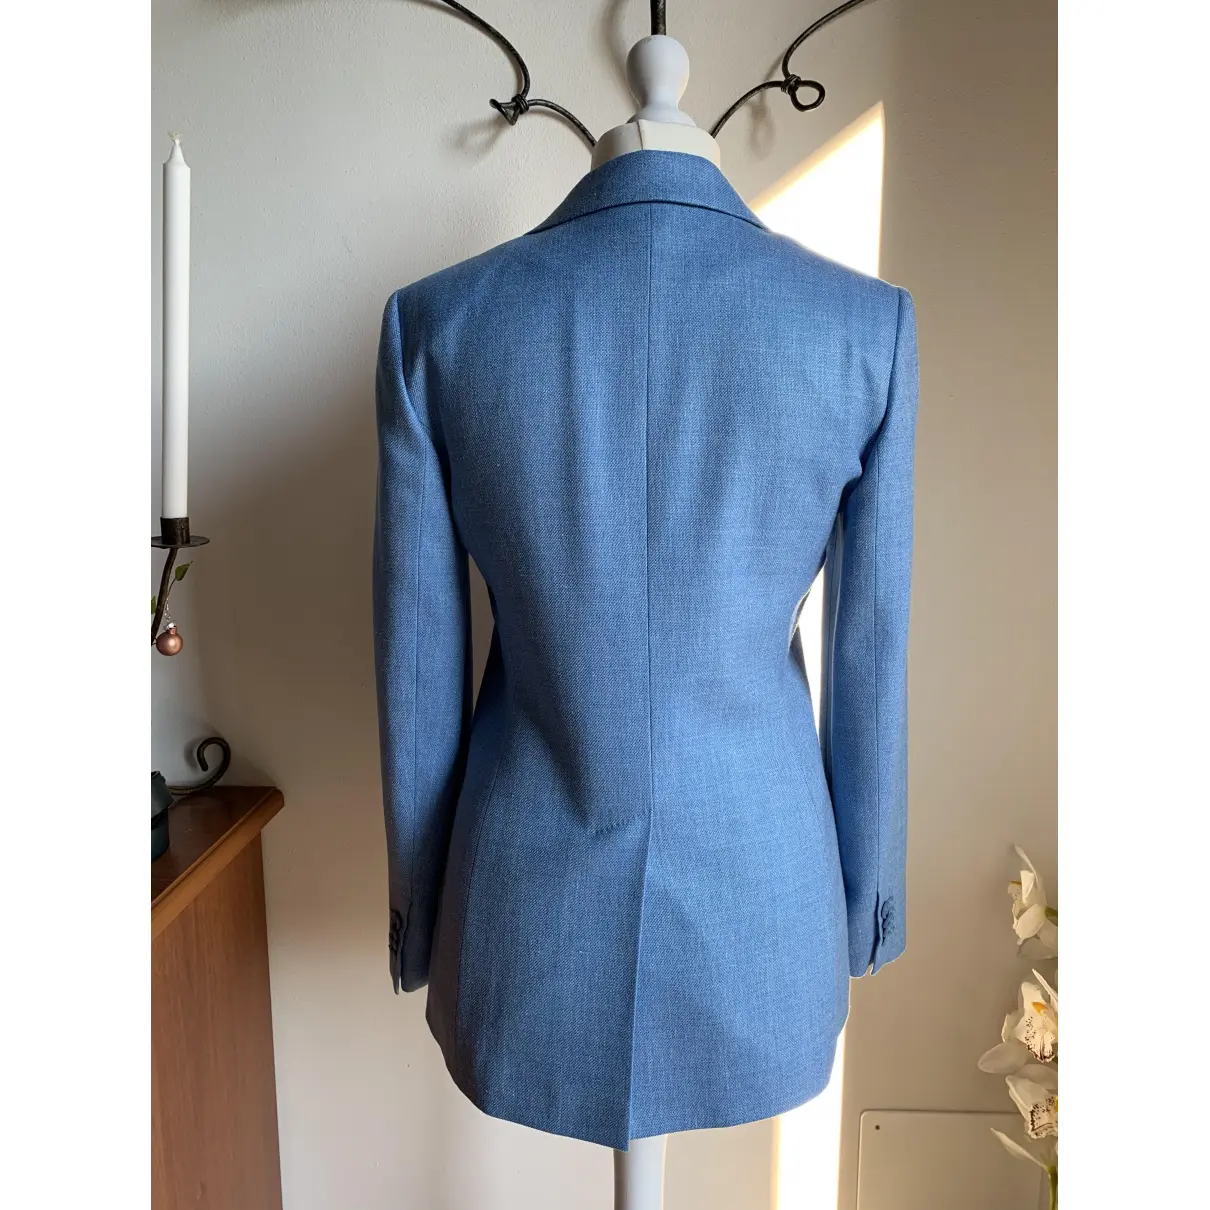 Buy Max Mara Wool suit jacket online